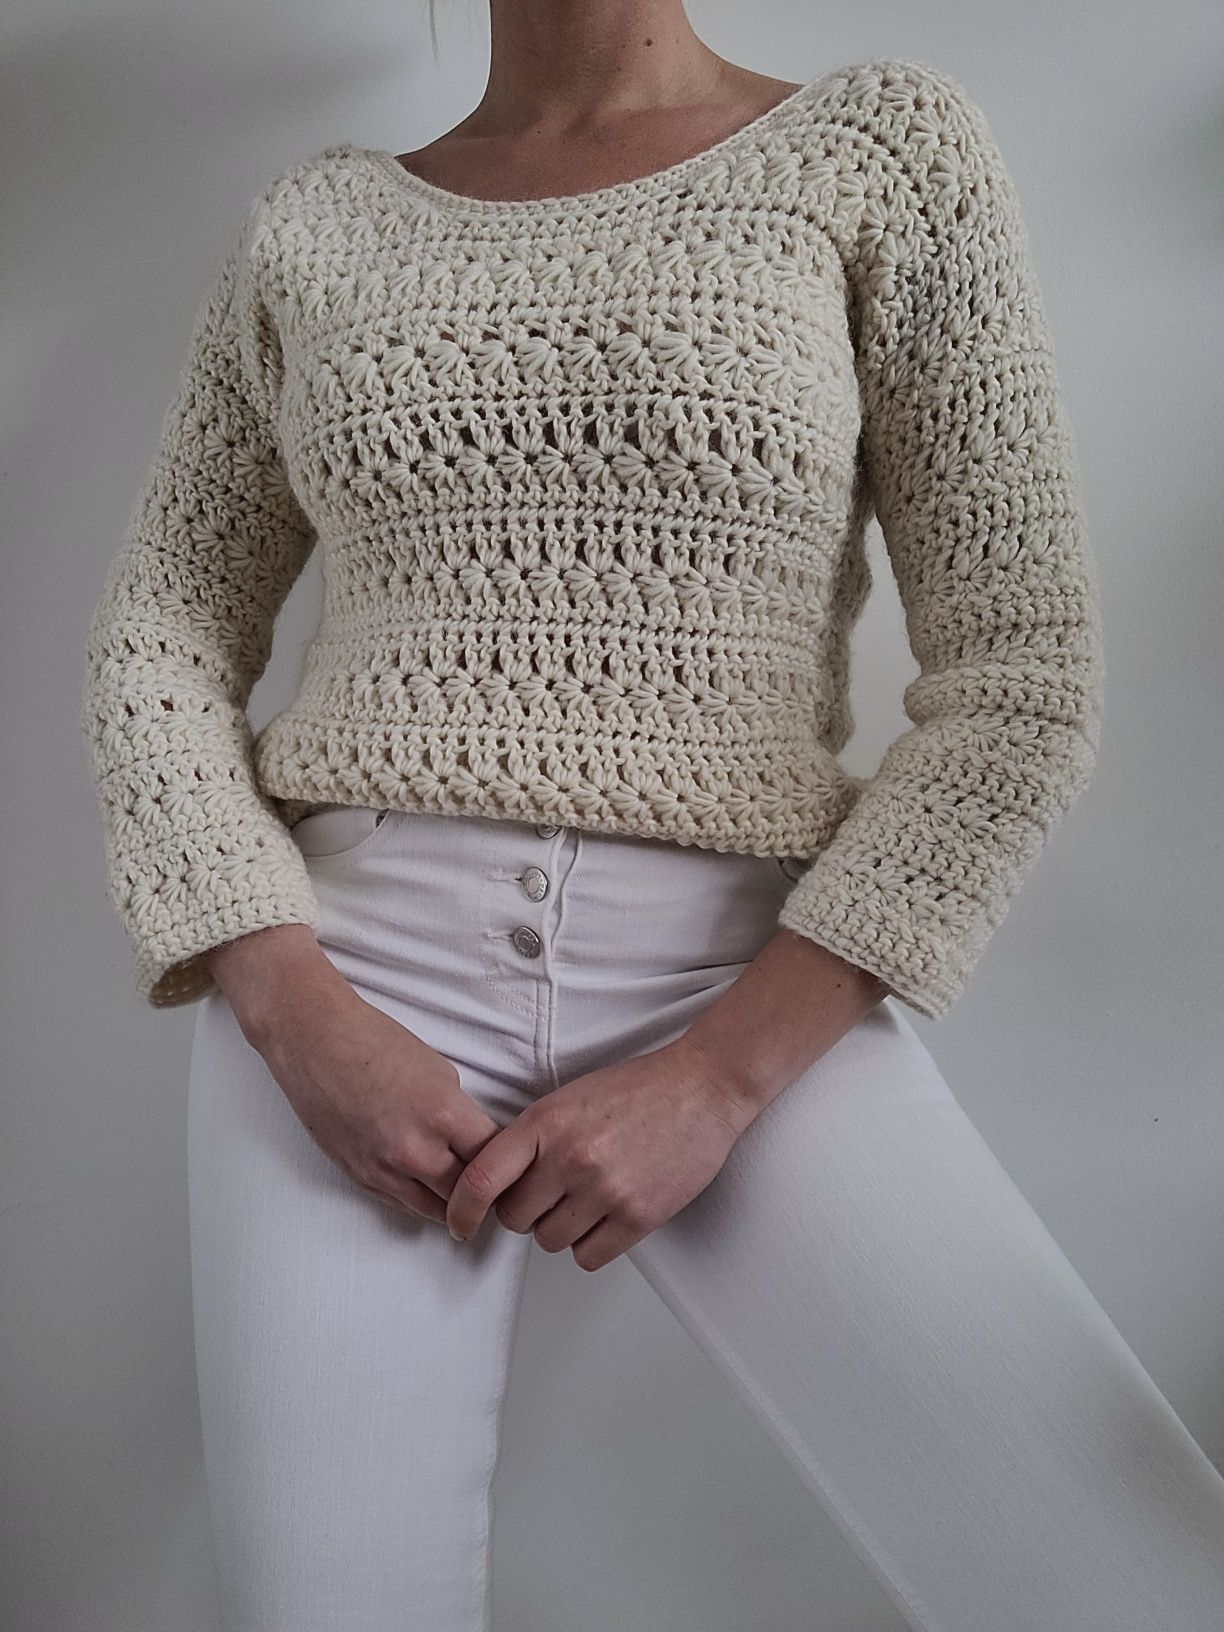 Gruby kremowy wełniany sweter boho 100% wełna handmade